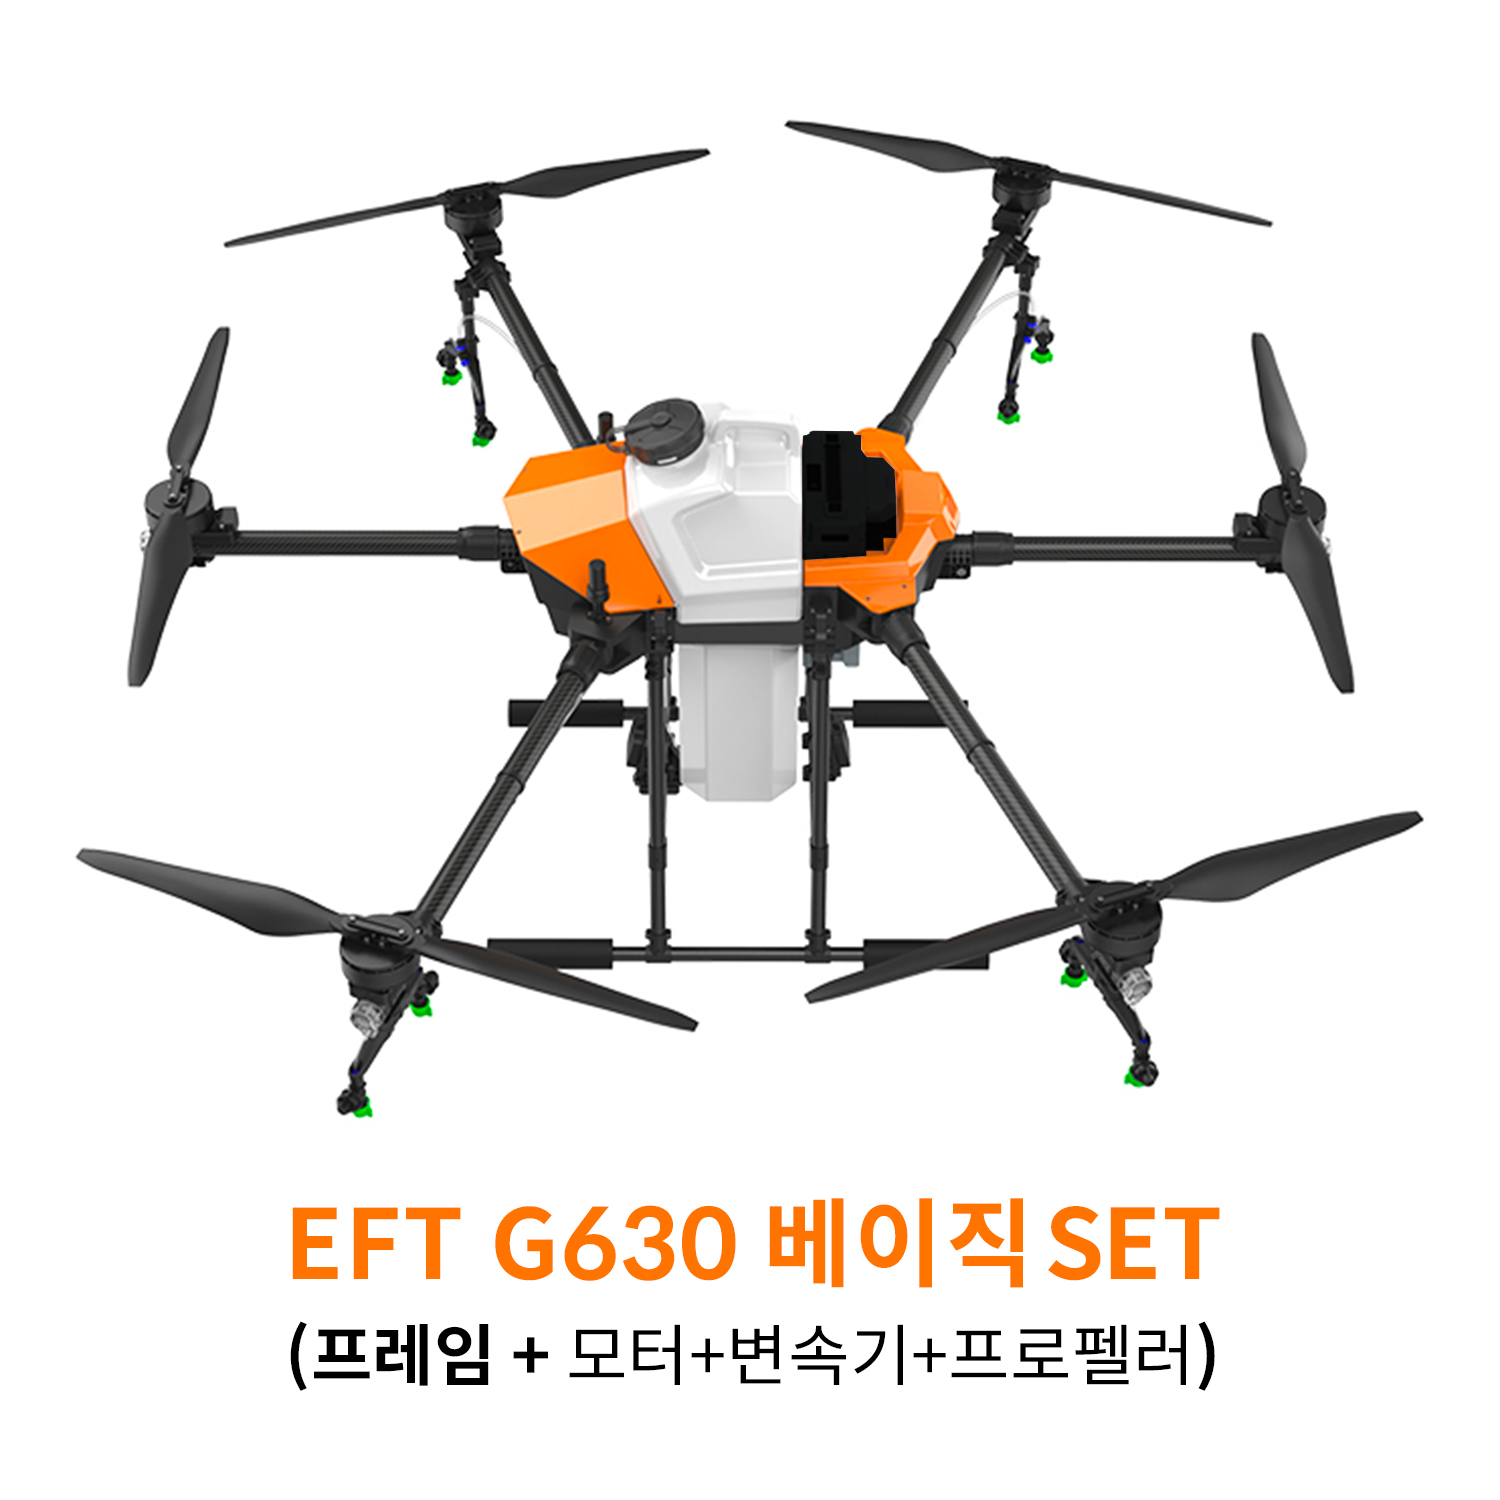 EFT G630 베이직 SET 농업 방제 드론하비윙 x9plus 파워시스템 탑재 헬셀